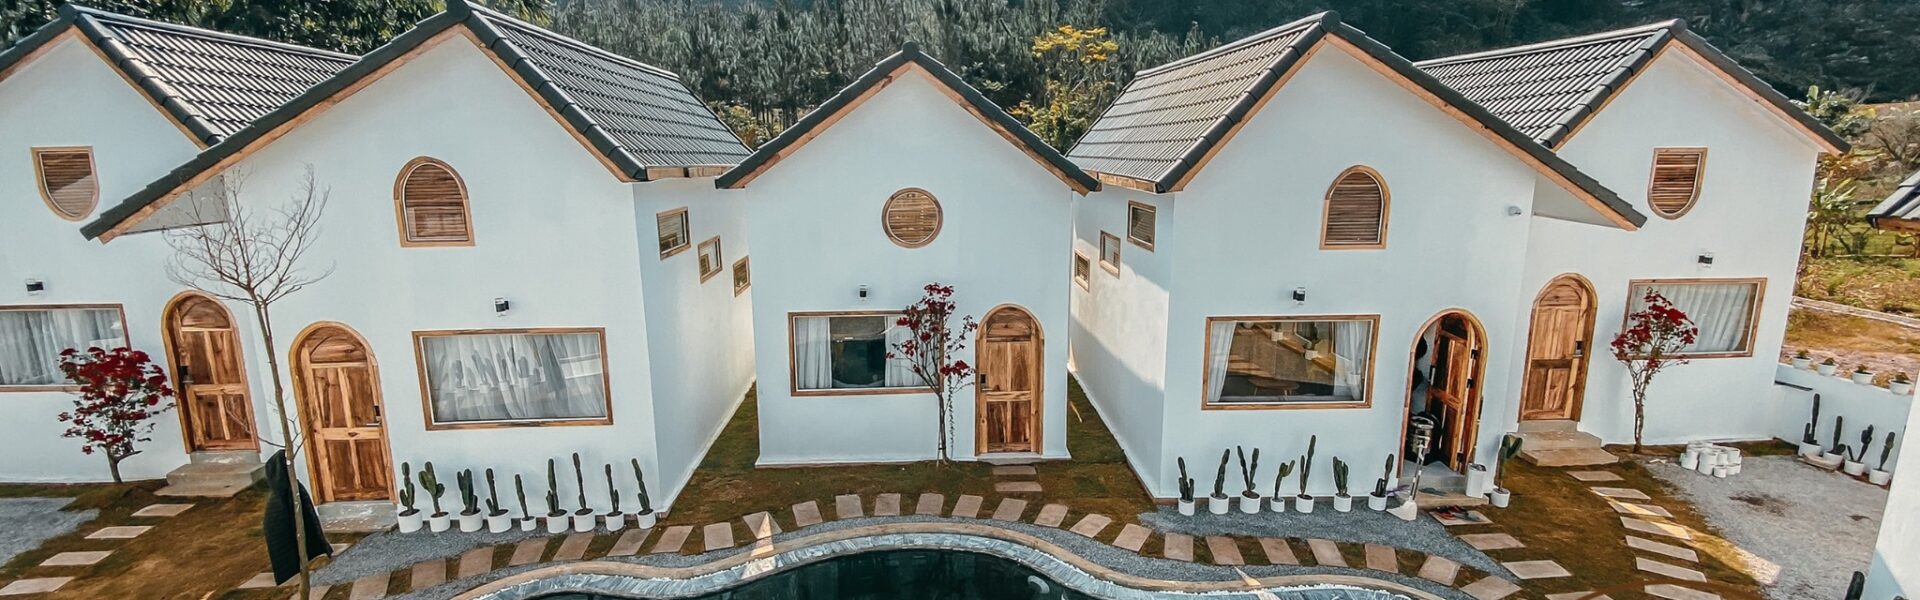 Top 10 villa Mộc Châu đẹp, giá rẻ và có view rừng thông thơ mộng - Ảnh đại diện